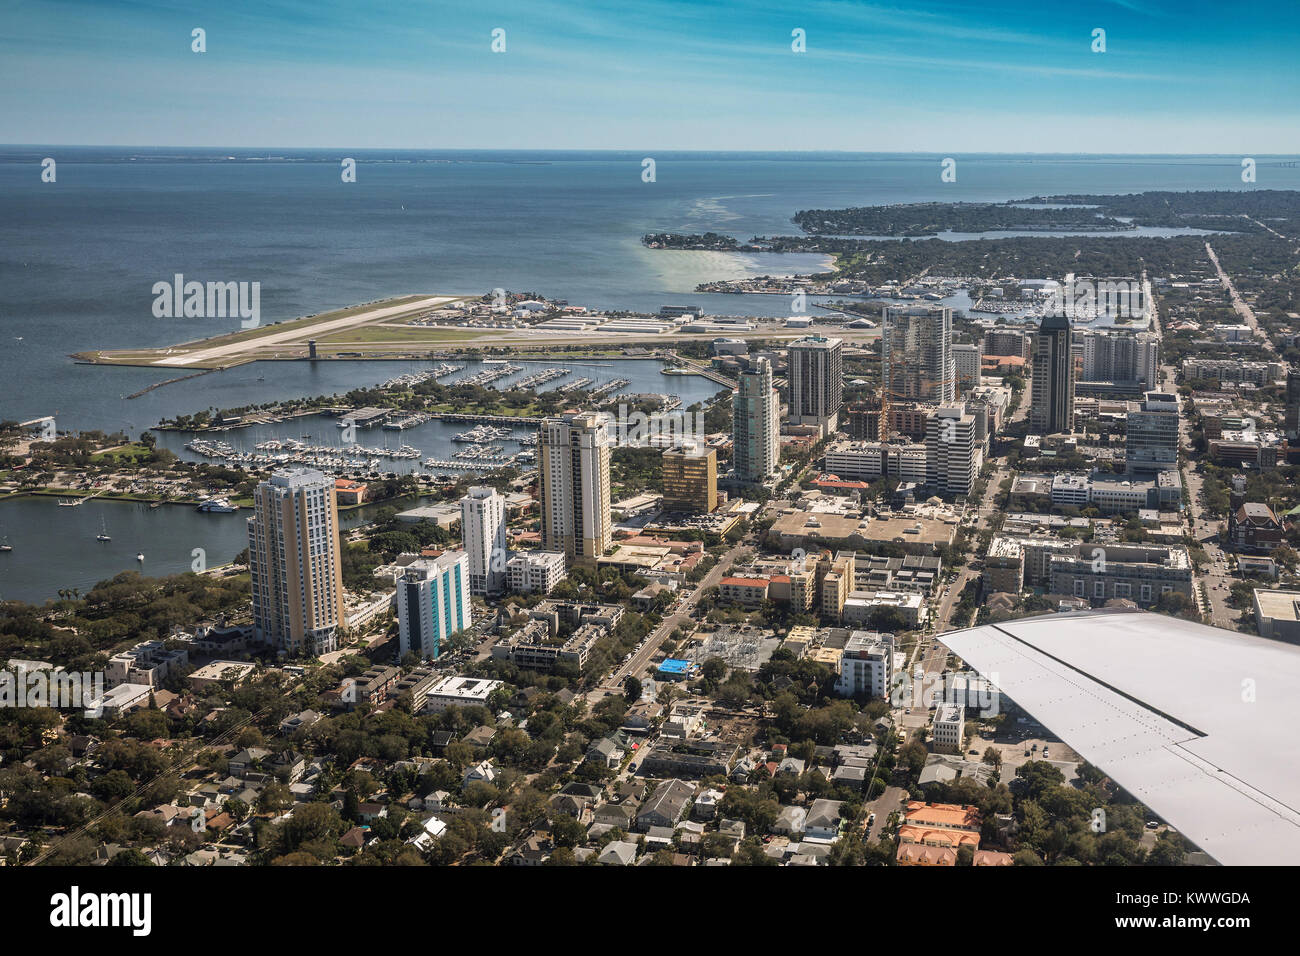 Vue aérienne du centre-ville de Saint-Pétersbourg, en Floride. Dans l'aéroport de Saint-Pétersbourg. Floride, États-Unis Banque D'Images